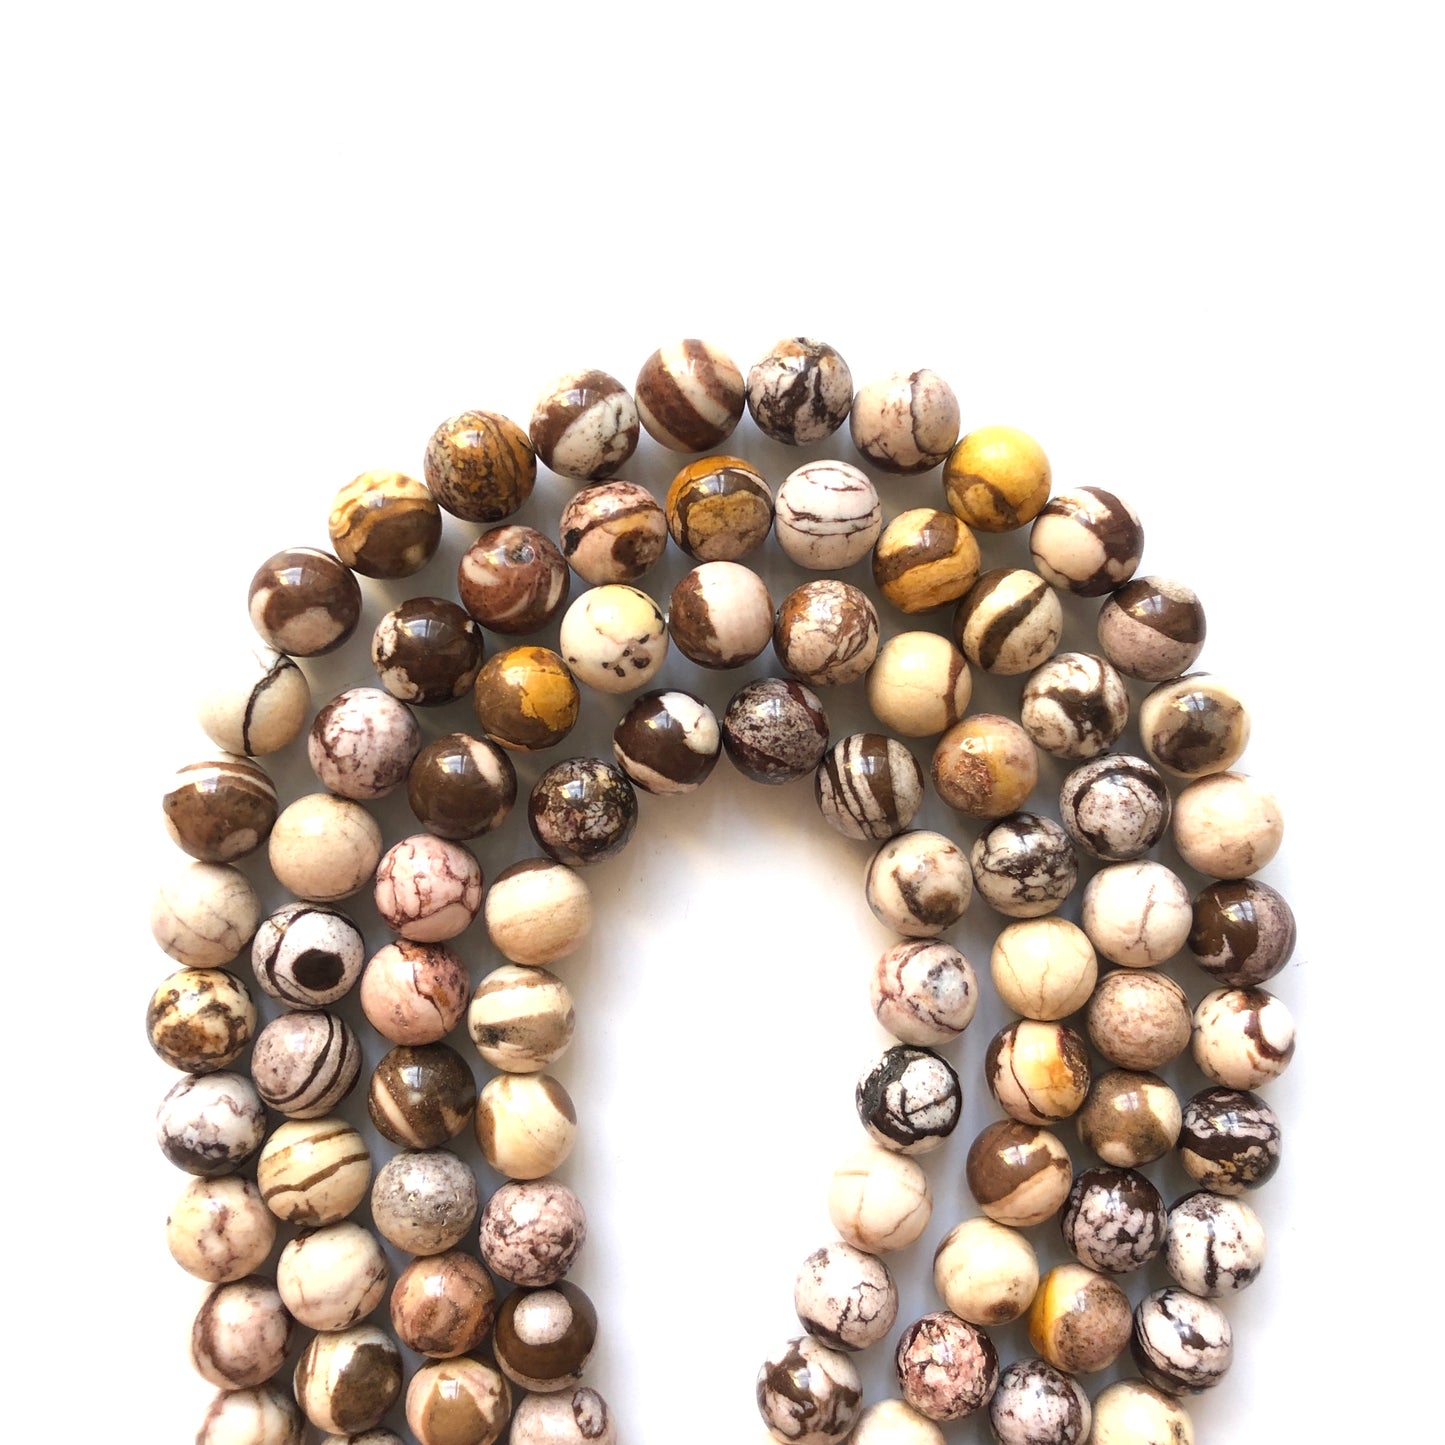 2 Strands/lot 10mm Australian Zebra Jasper Stone Round Beads Stone Beads Jasper Beads Charms Beads Beyond